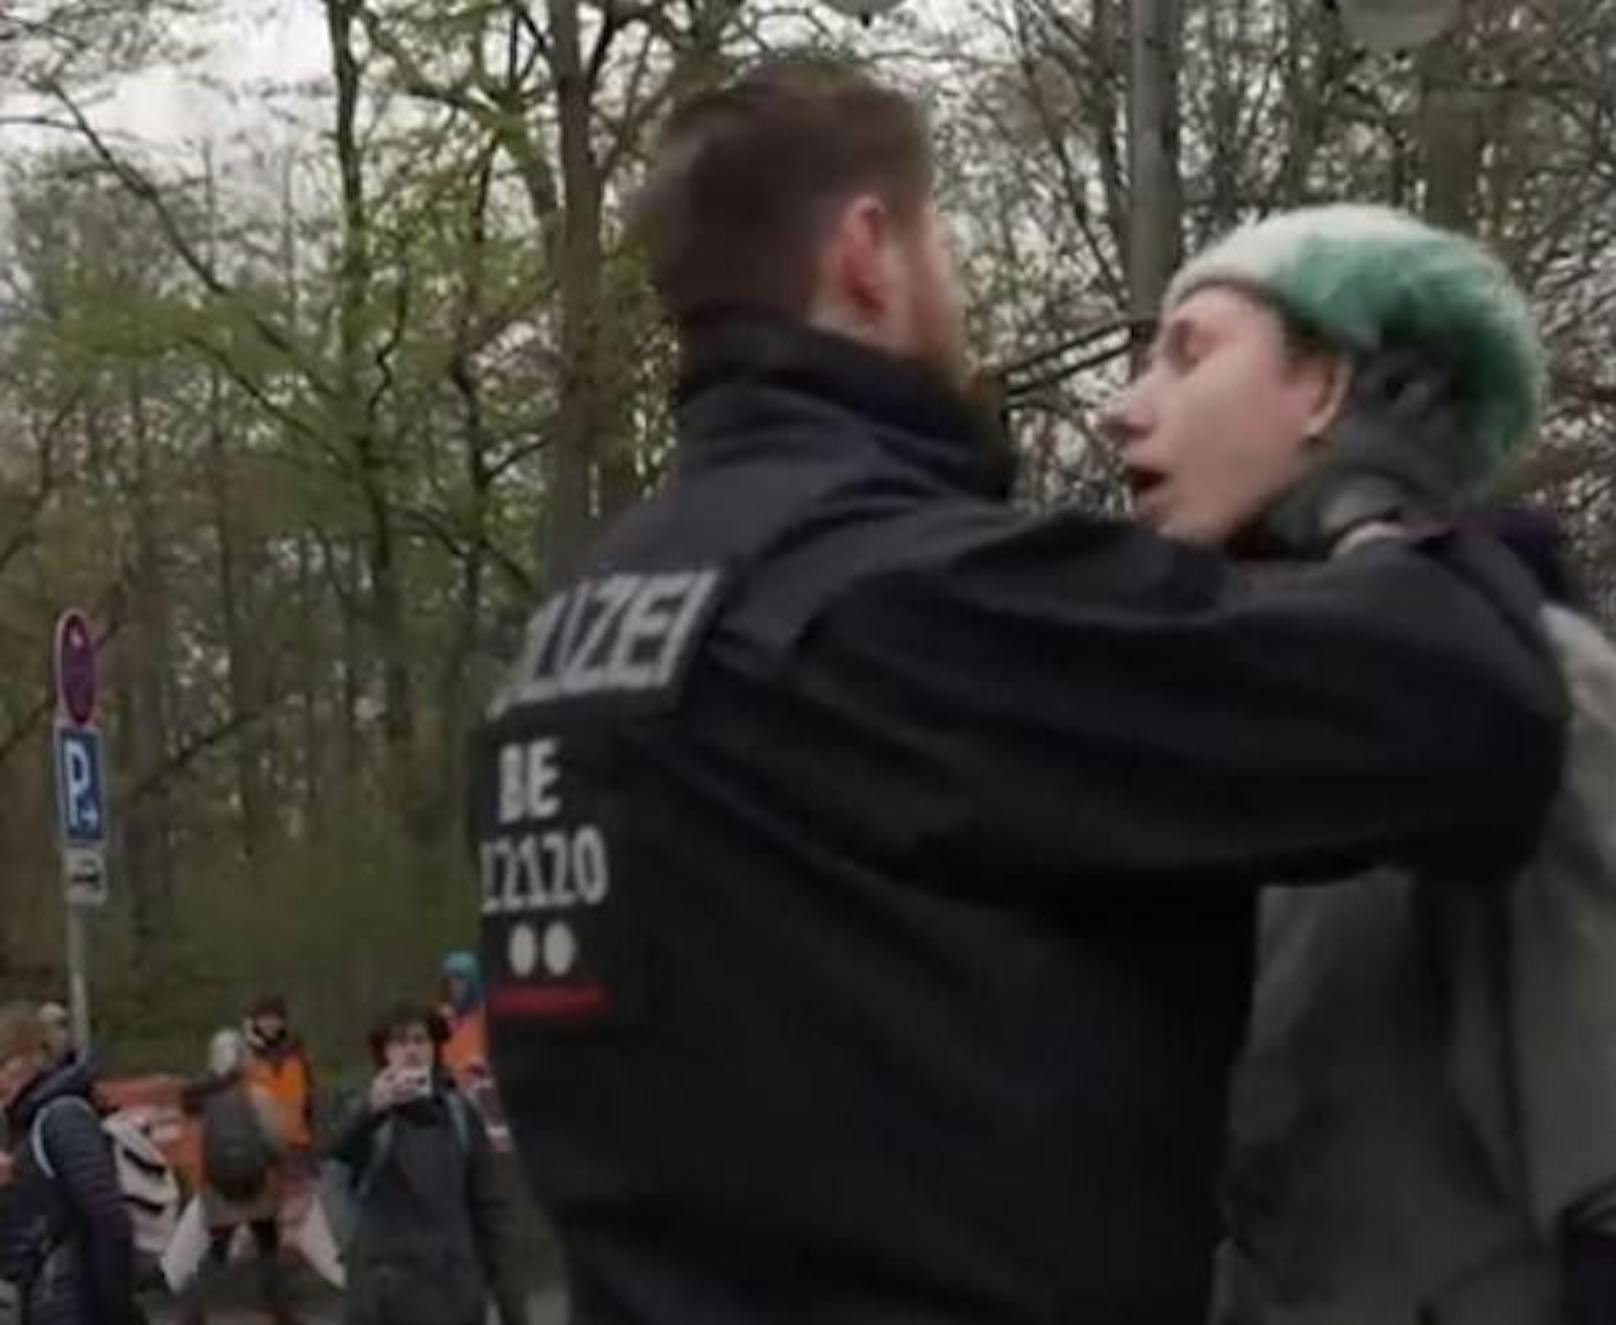 Aufnahmen eines Polizeieinsatzes bei der Klima-Demo von "Letzte Generation"-Aktivisten sorgen für Kritik. Ein Beamter hebt darin einen Mann an Kinn und Hals nach oben.